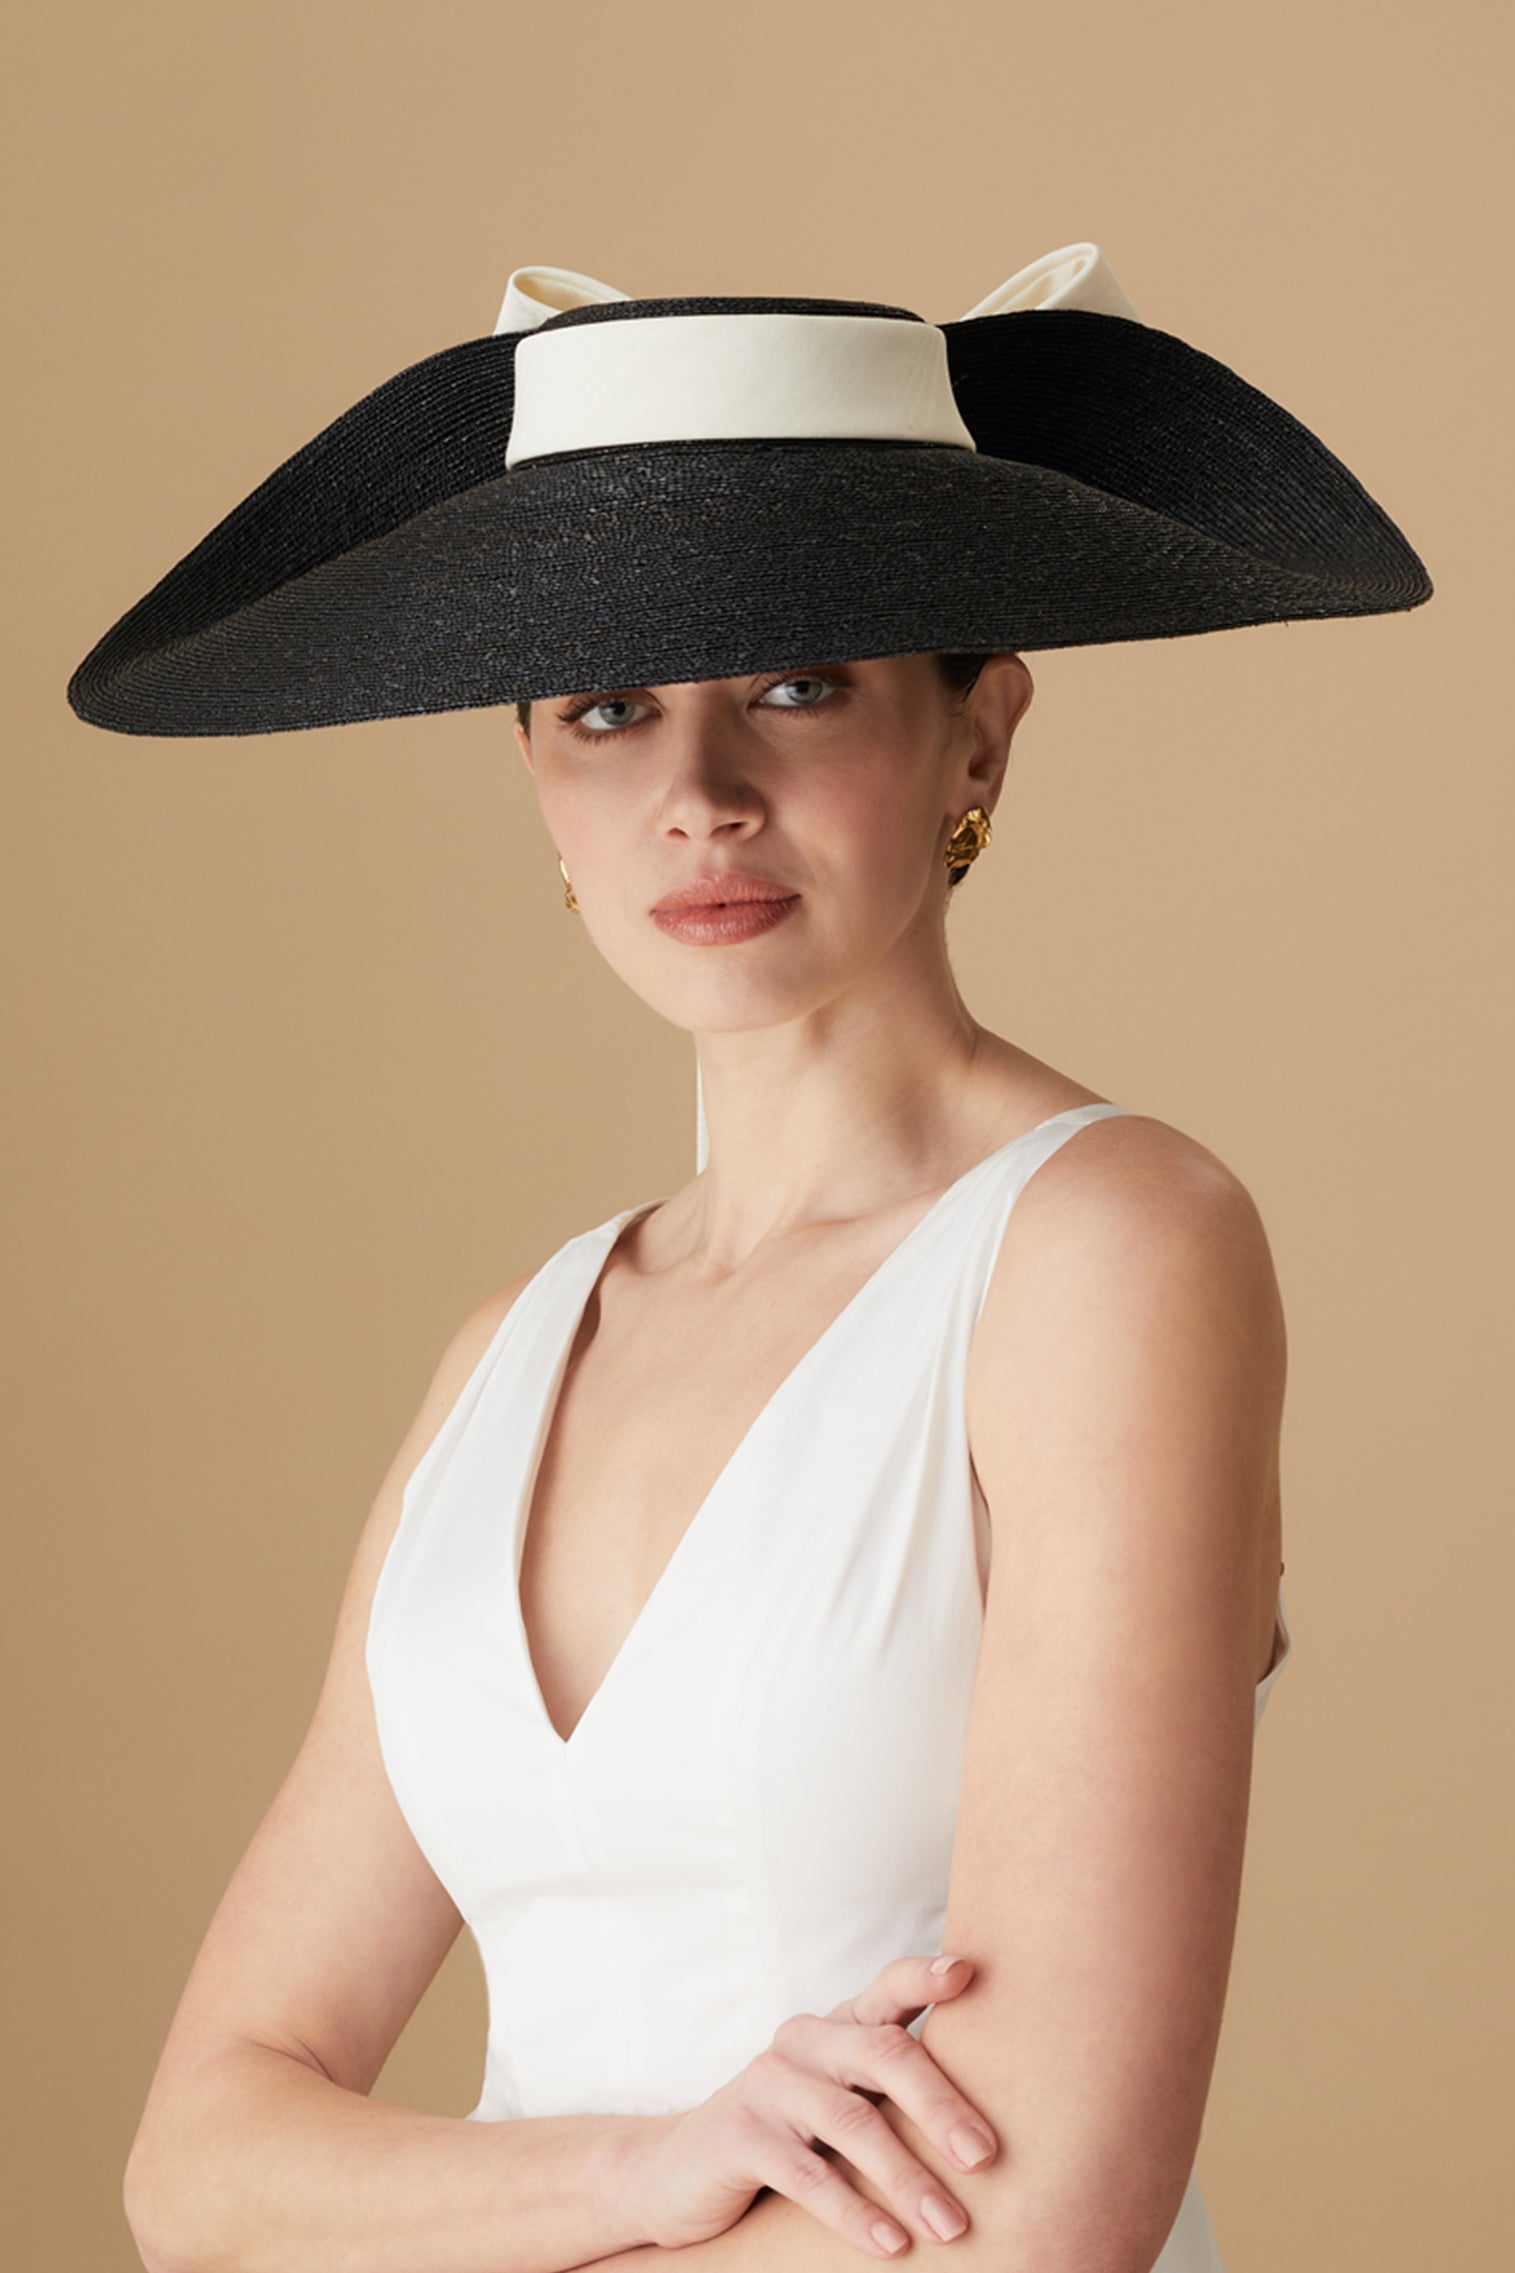 Lady Grey Black Wide Brim Hat - Panamas & Sun Hats for Women - Lock & Co. Hatters London UK